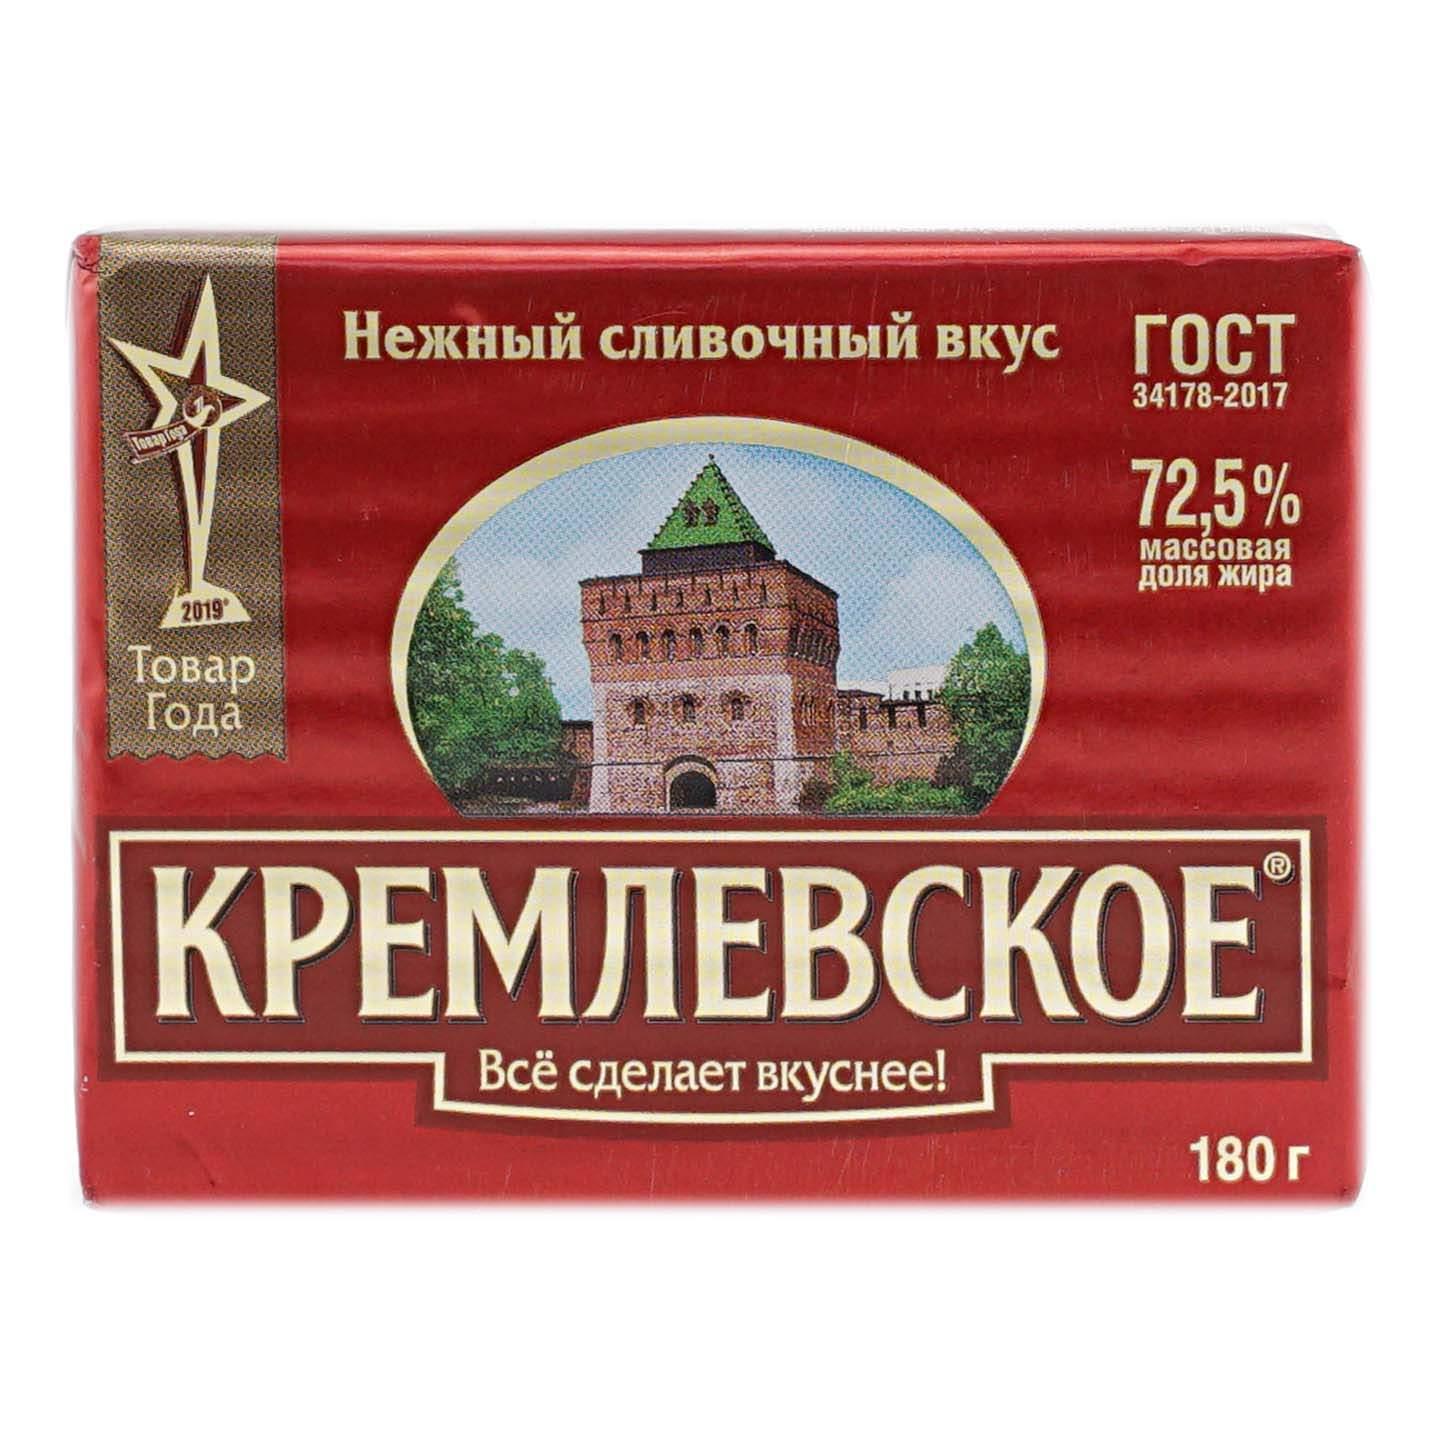 Спред Кремлевское растительно-жировой 72,5%, 180 гр., обертка